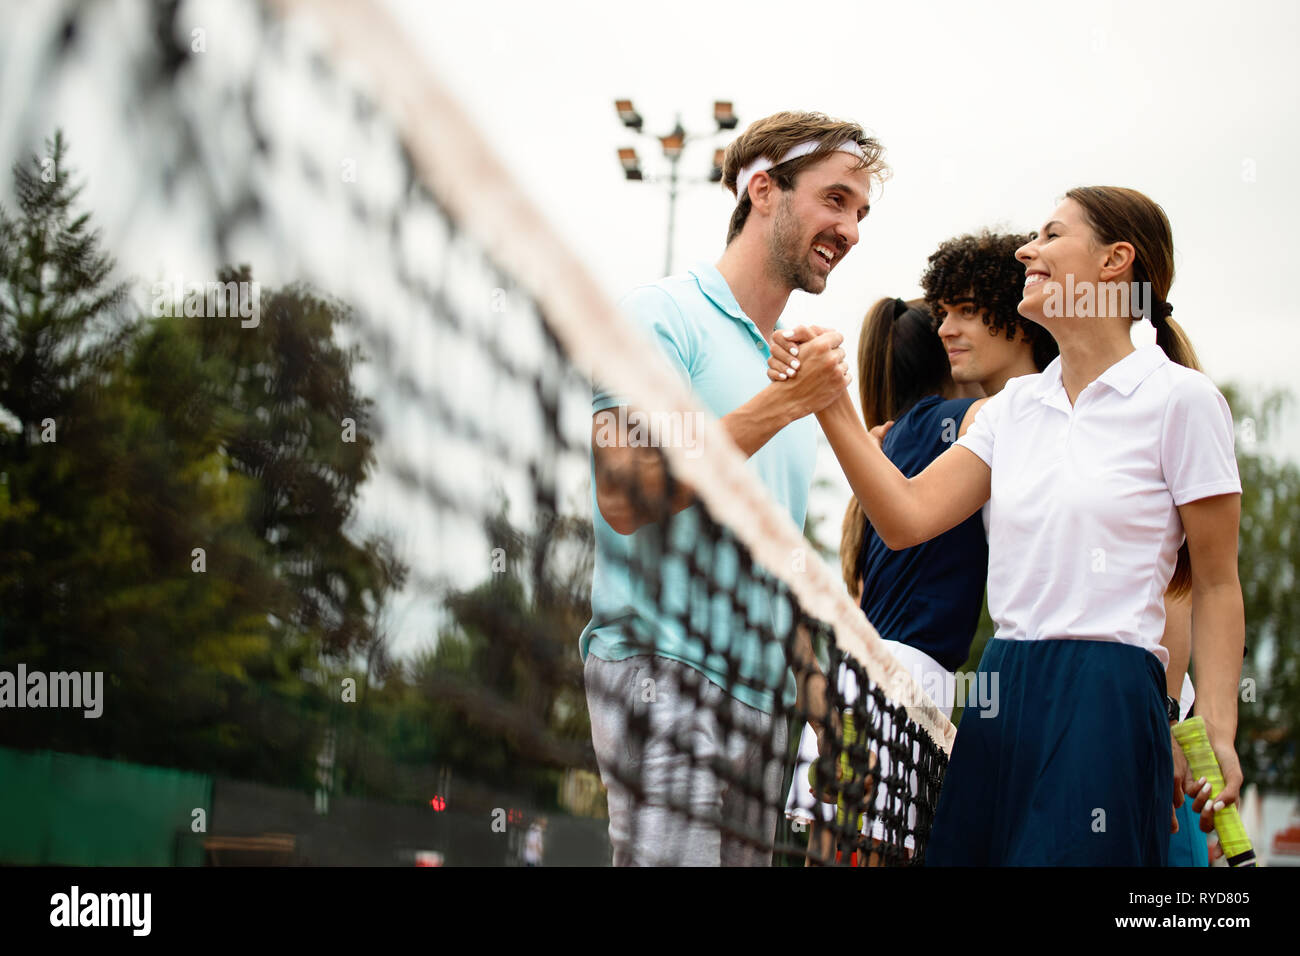 Un gruppo di giocatori di tennis dando una stretta di mano dopo una partita Foto Stock